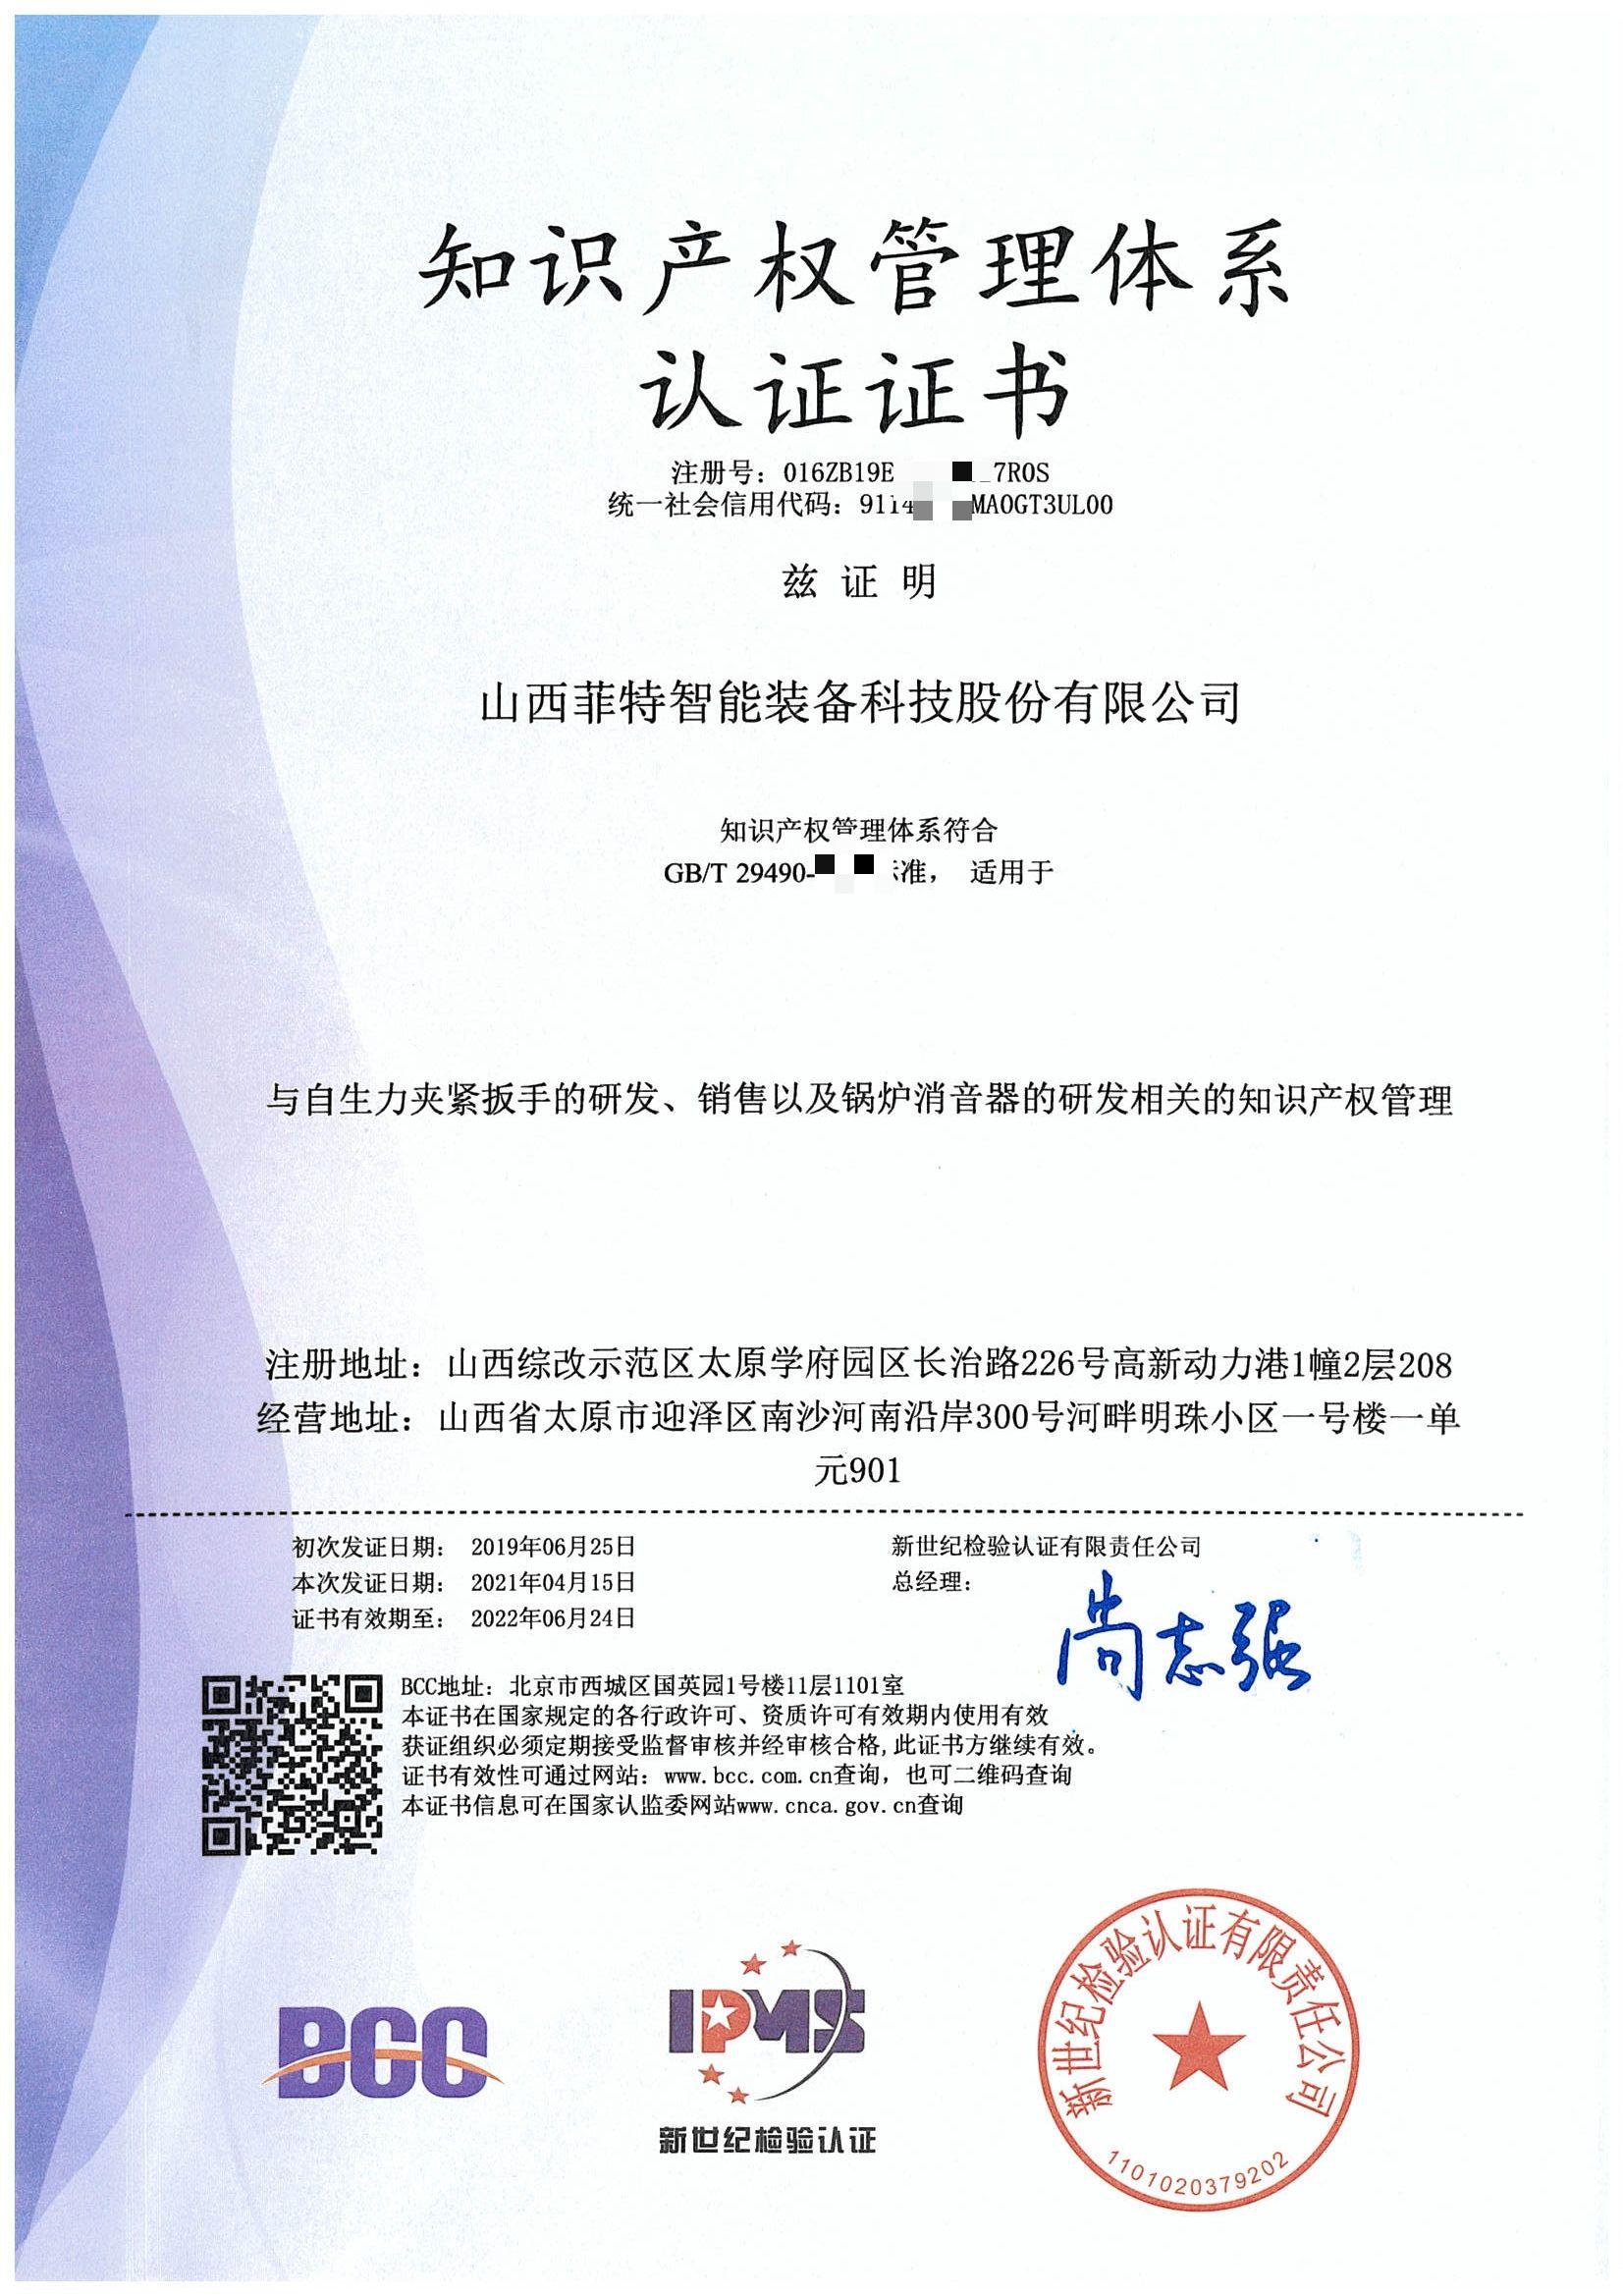 知识产权管理体系认证证书-菲特科技